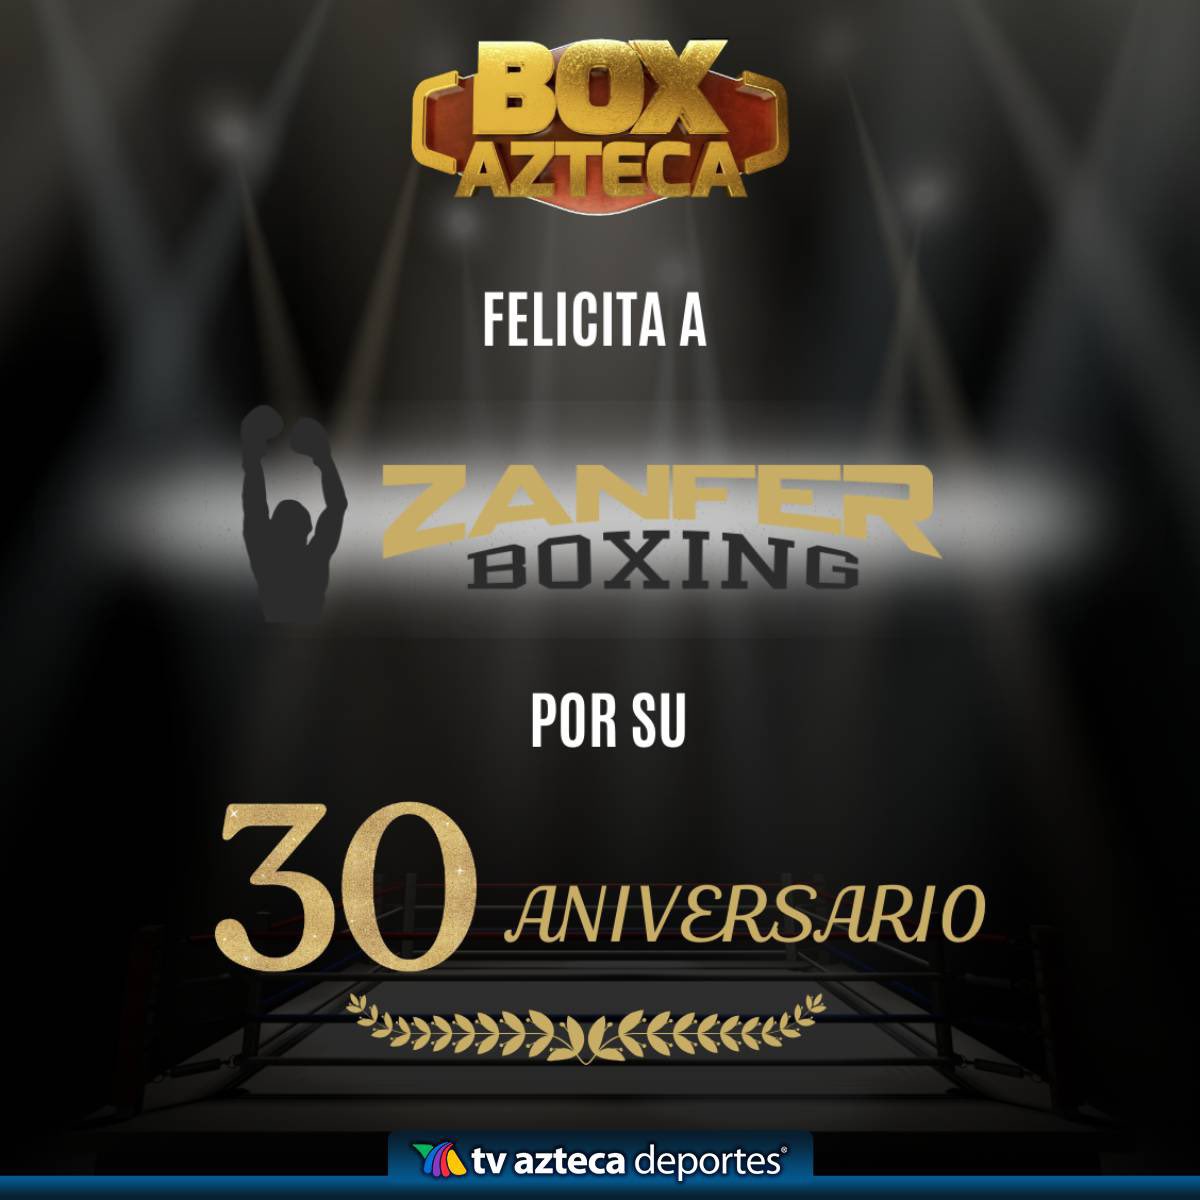 ¡Azteca Deportes felicita a Zanfer por su 30 aniversario!🤩 #AztecaDeportes #BoxAzteca